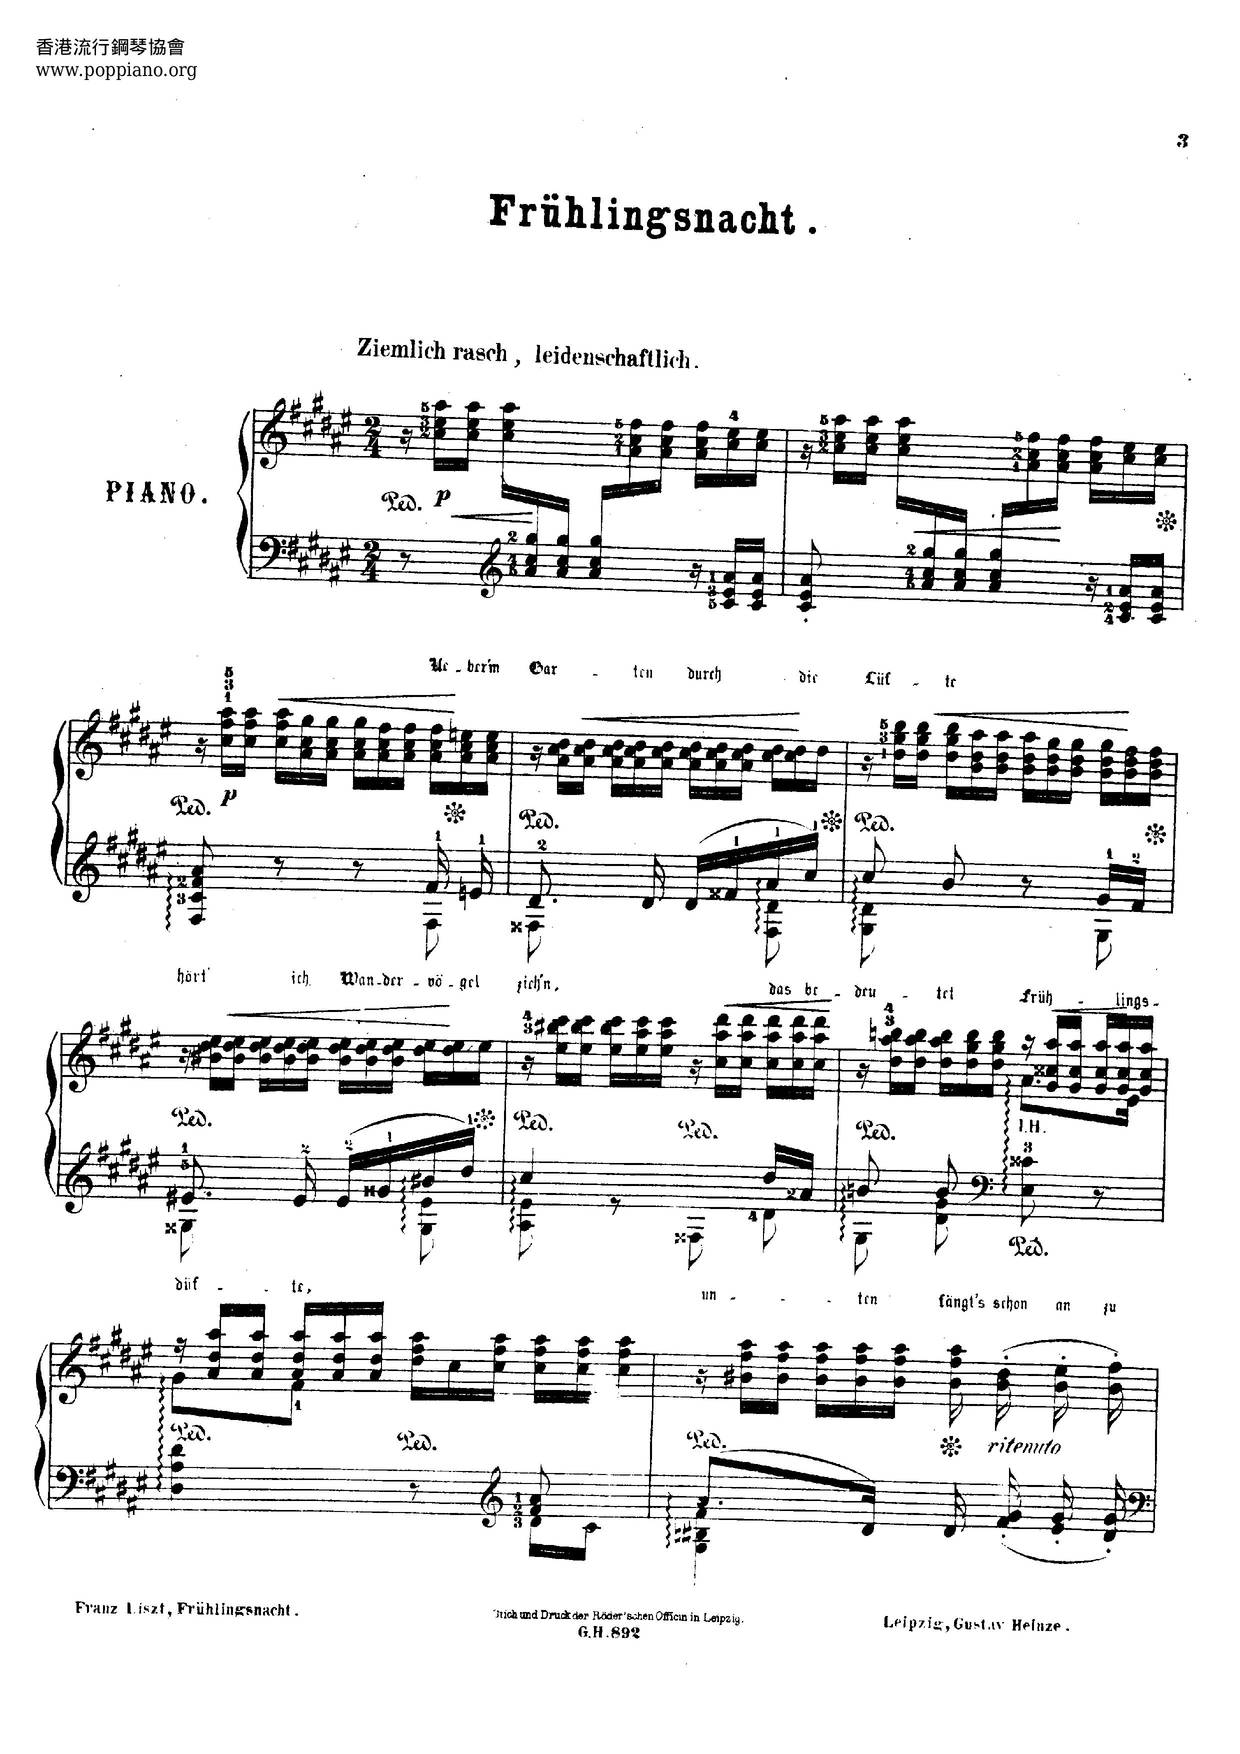 Frühlingsnacht, Lied Von Schumann, S.568琴谱